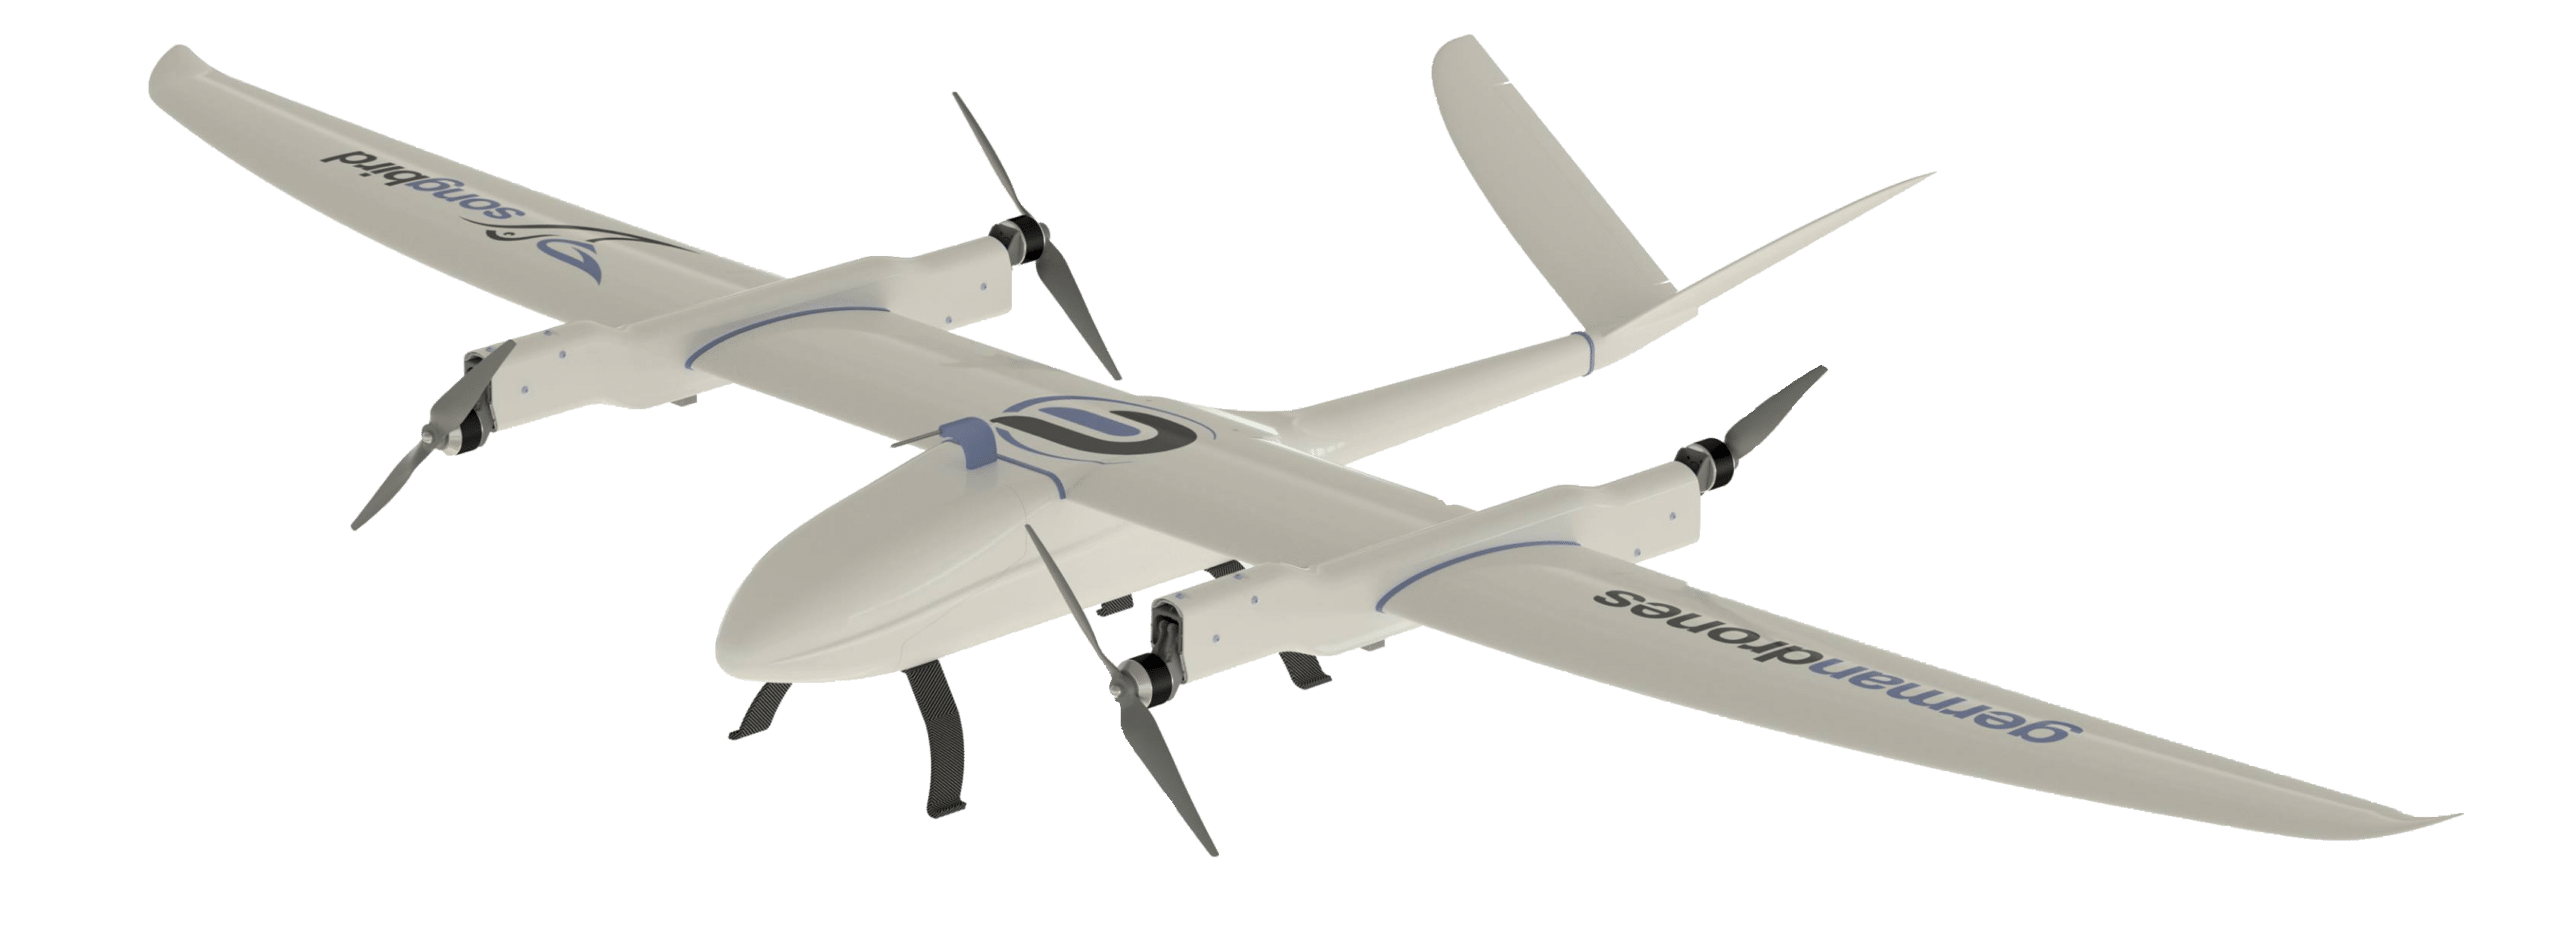 IOMI Makya Drohne - 1080P - 219g - Top Zustand inkl. Zubehör und Rechnung !